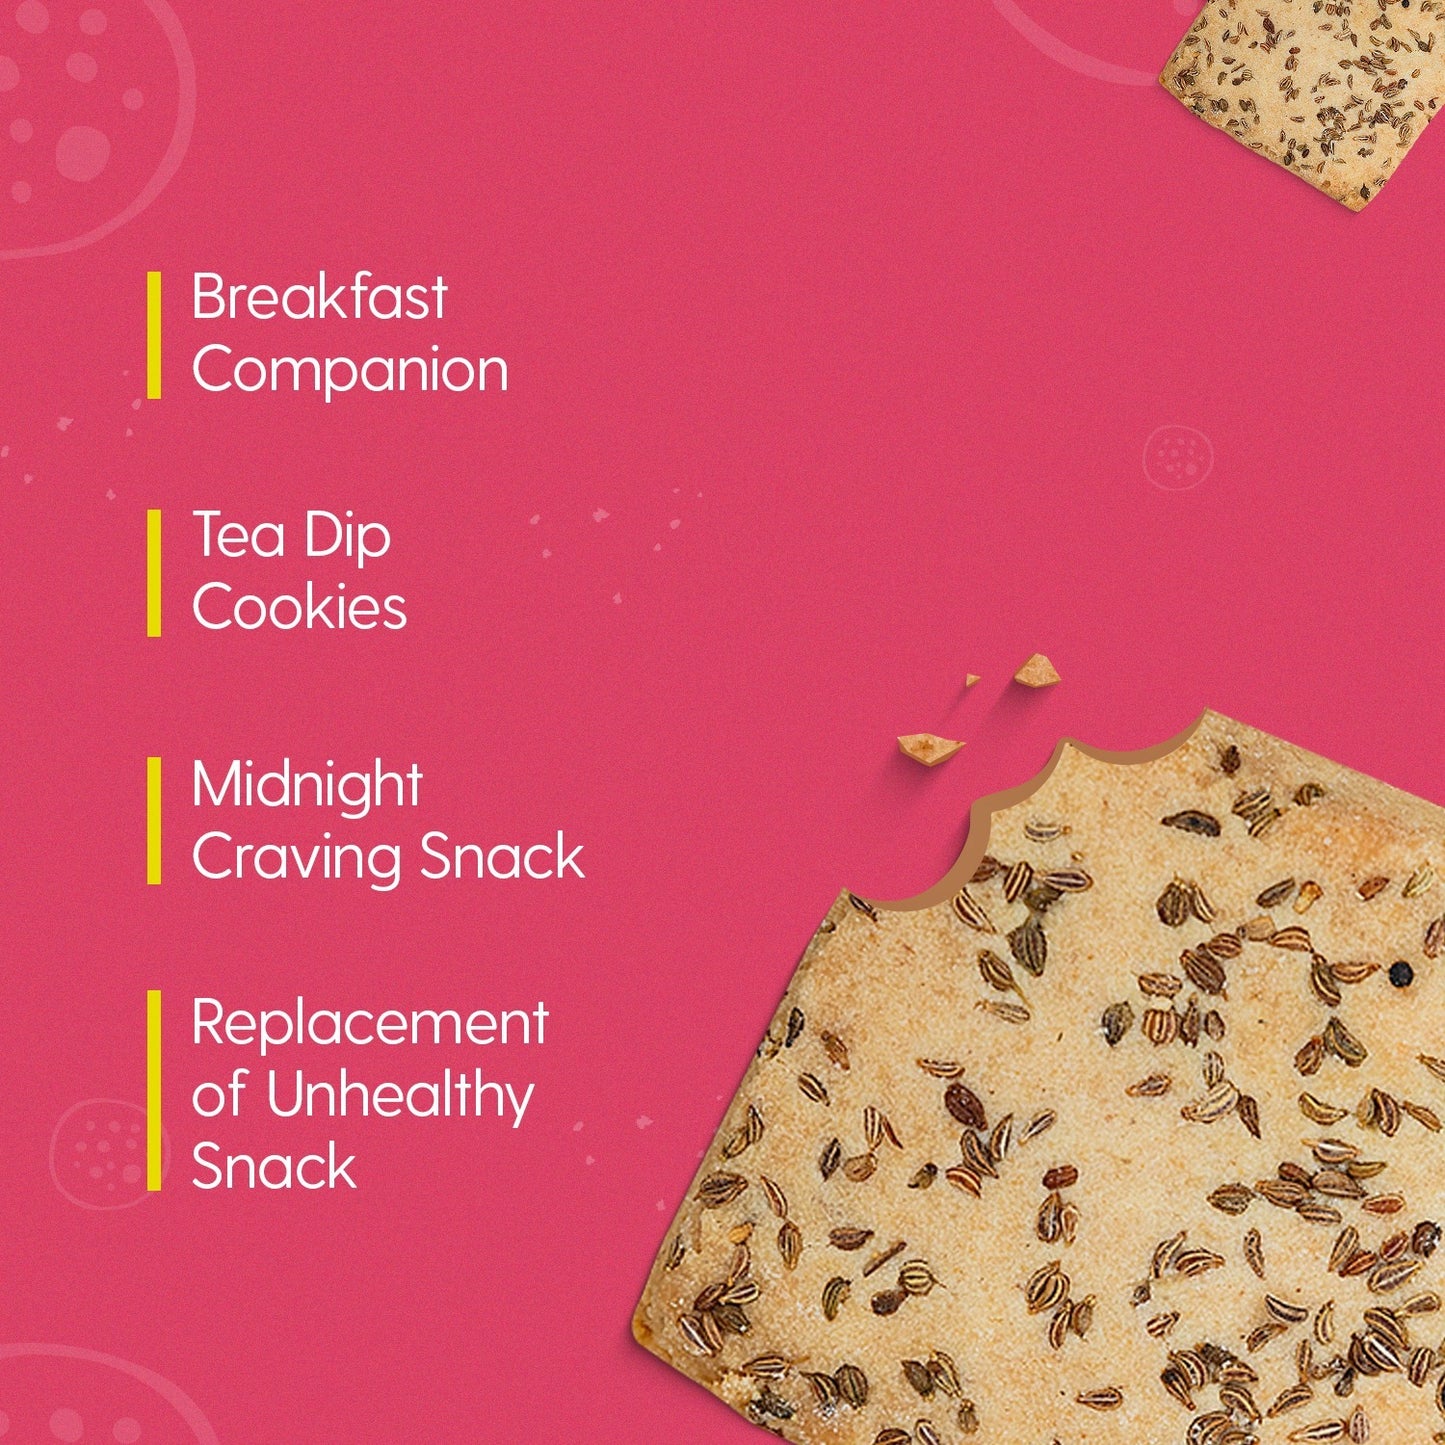 Ajwain Cookies (Pack of 2)